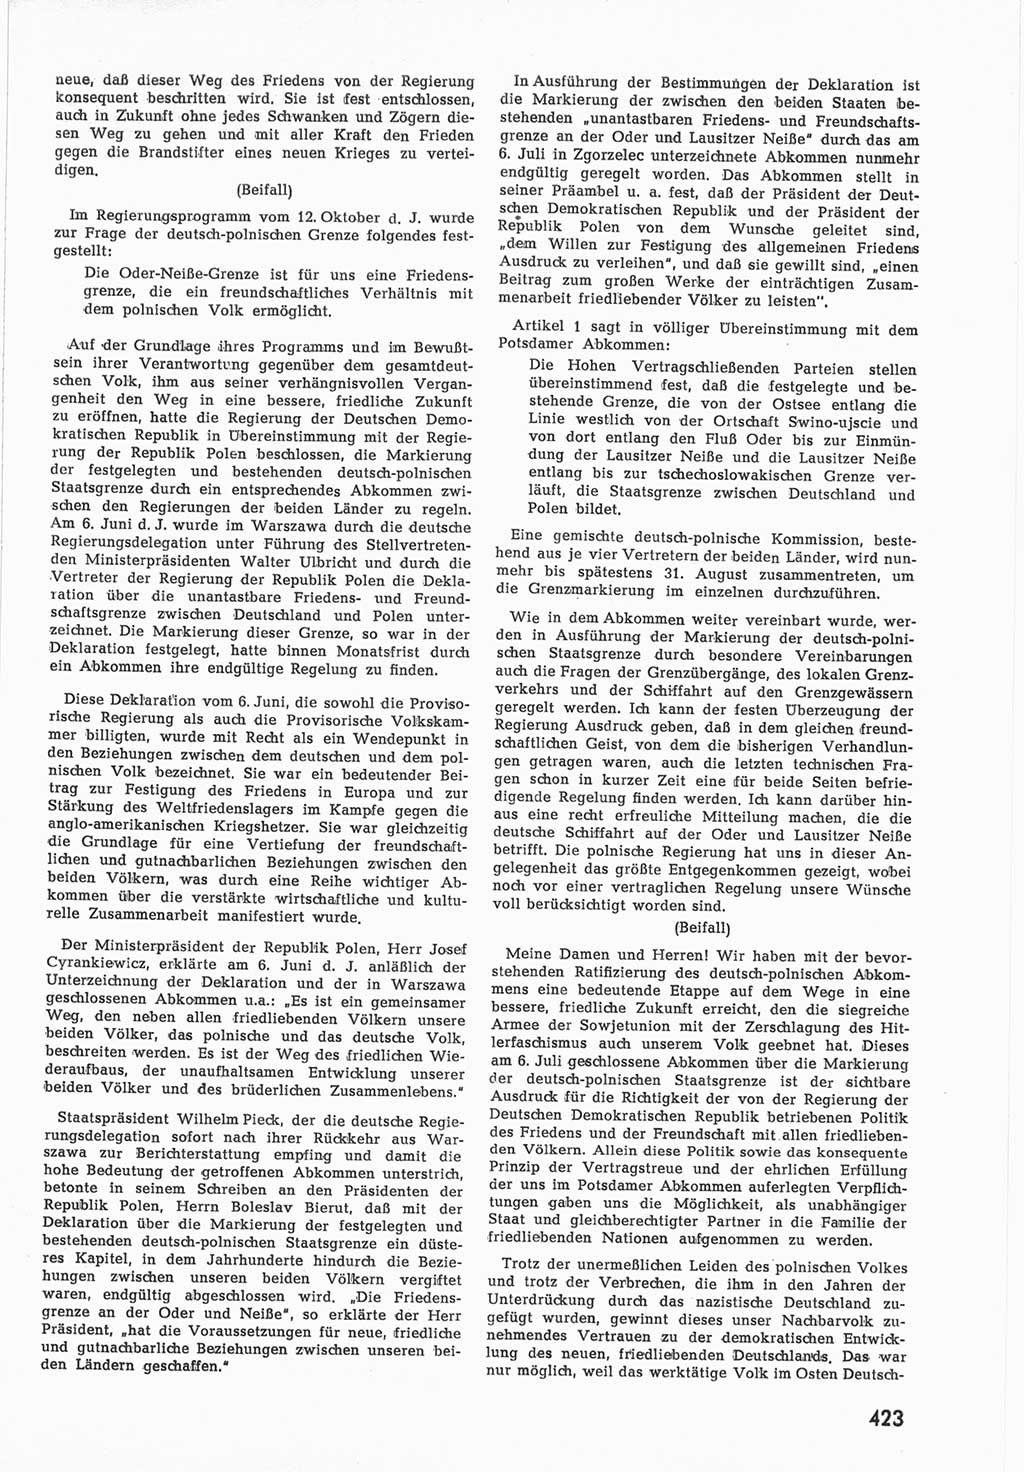 Provisorische Volkskammer (VK) der Deutschen Demokratischen Republik (DDR) 1949-1950, Dokument 441 (Prov. VK DDR 1949-1950, Dok. 441)